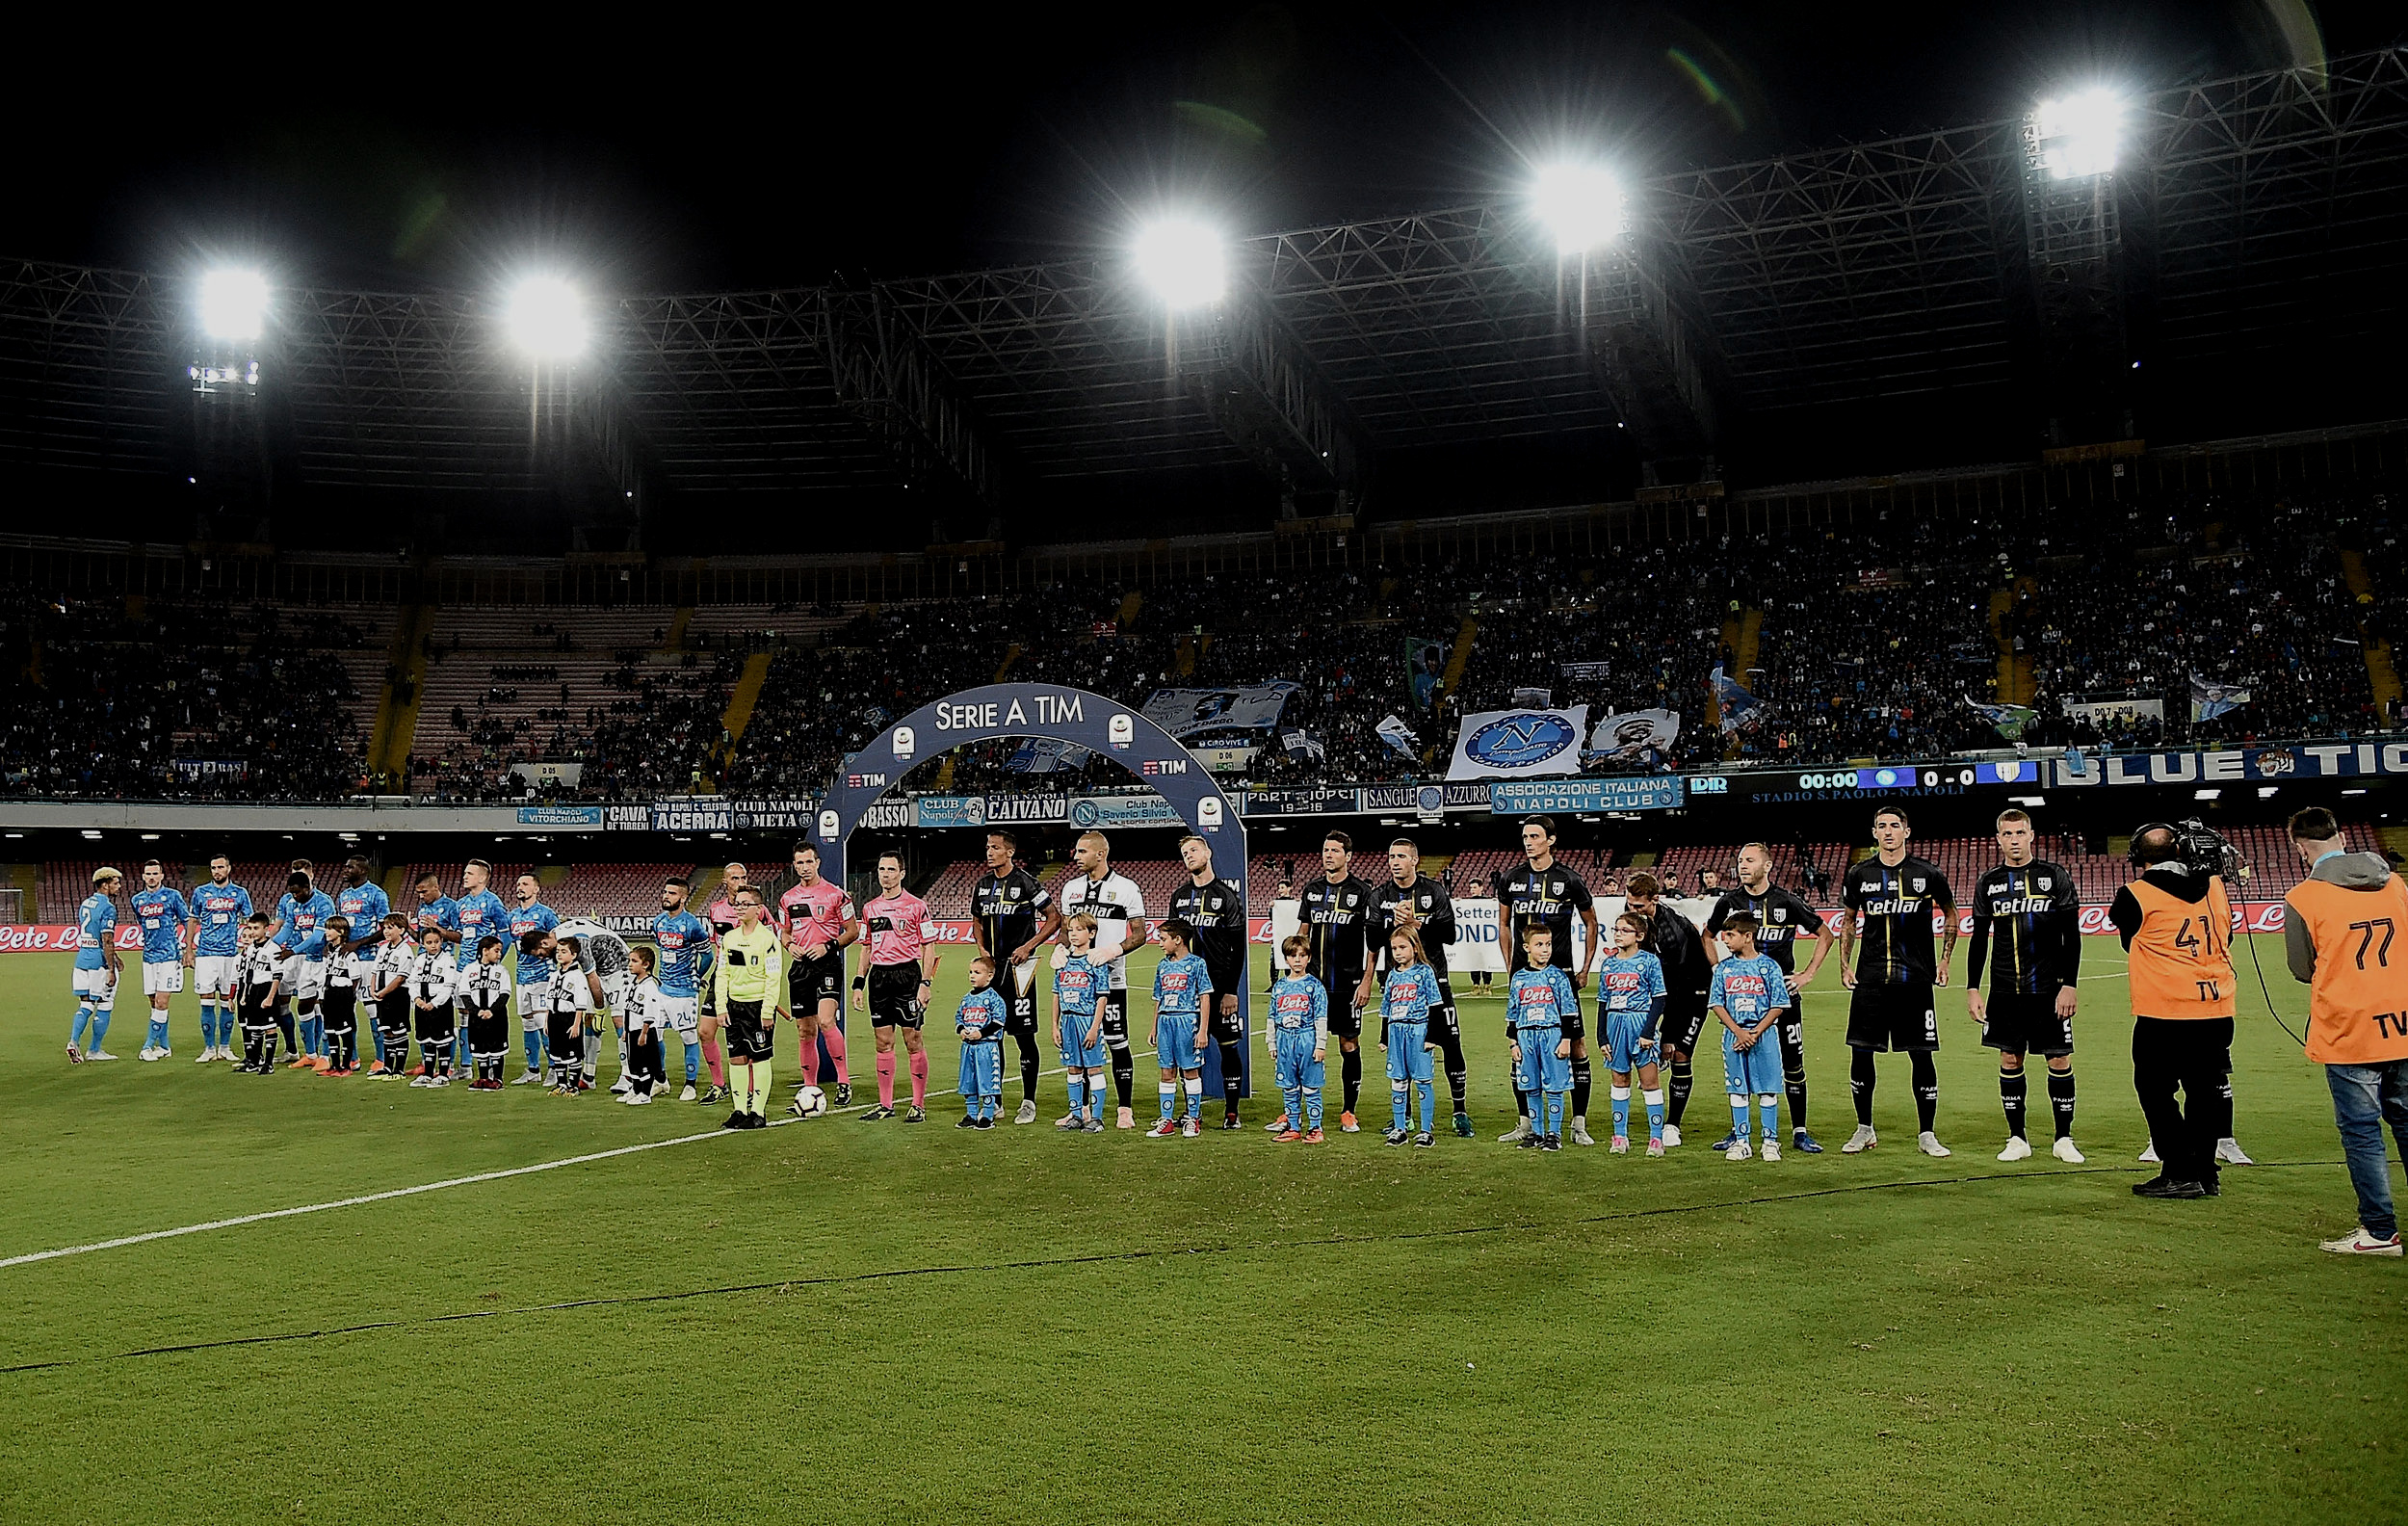  Napoli: Napoli-præsident Aurelio de Laurentiis har i årevis talt om at komme væk fra det nedslidte Stadio San Paolo, som han på et tidspunkt decideret sammenlignede med et lokum. Klubben har dog endnu ingen tegninger klar med det nye stadion, og har